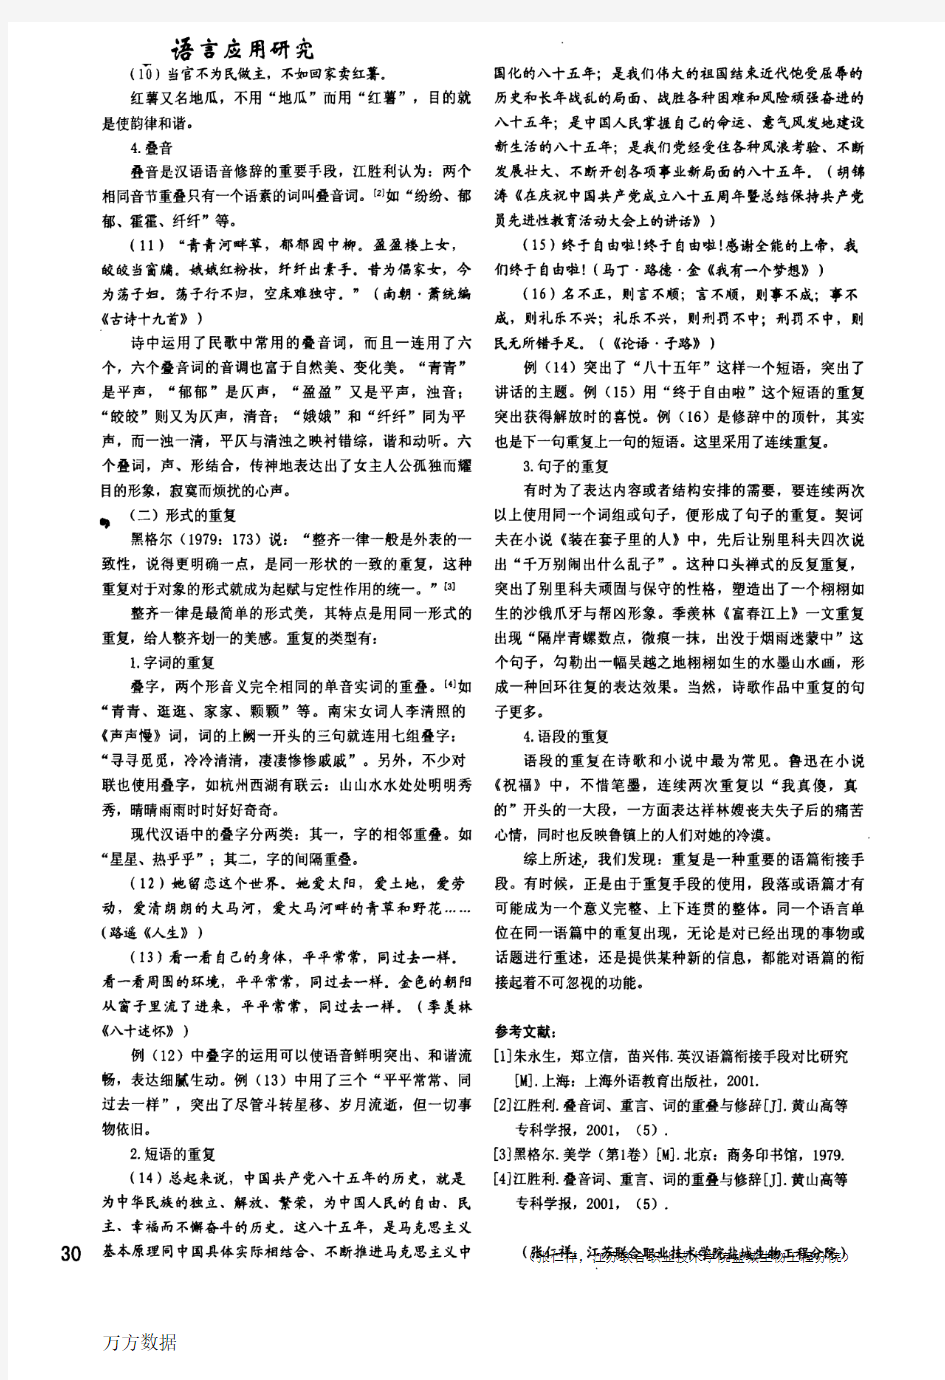 汉语语篇重复的分类